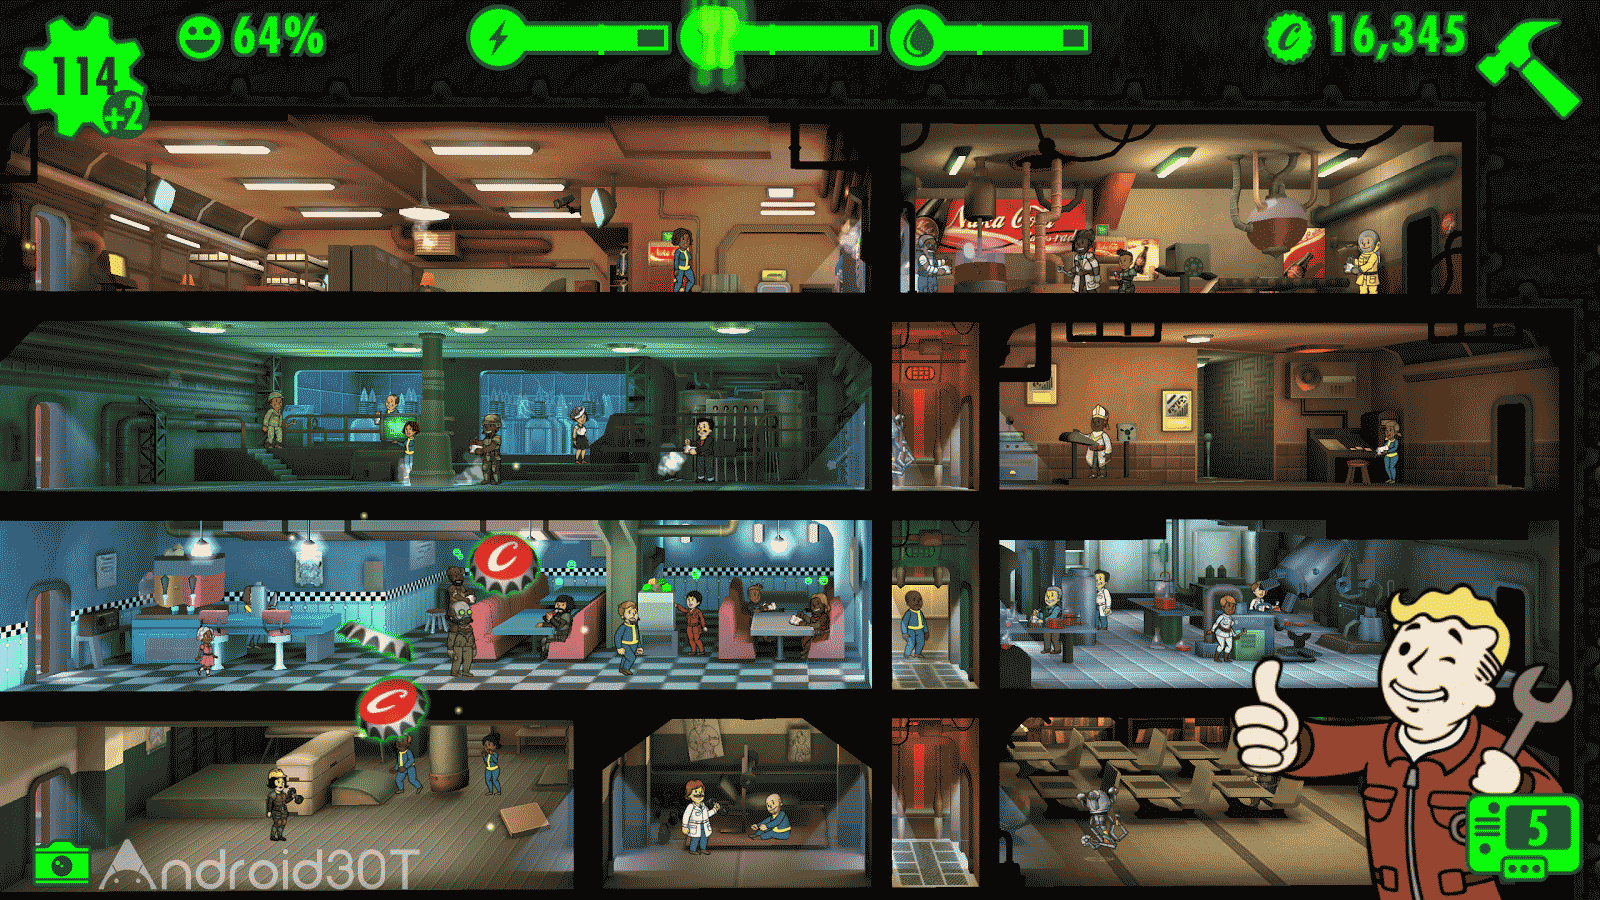 دانلود Fallout Shelter 1.14.14 – بازی فالوت شلتر اندروید